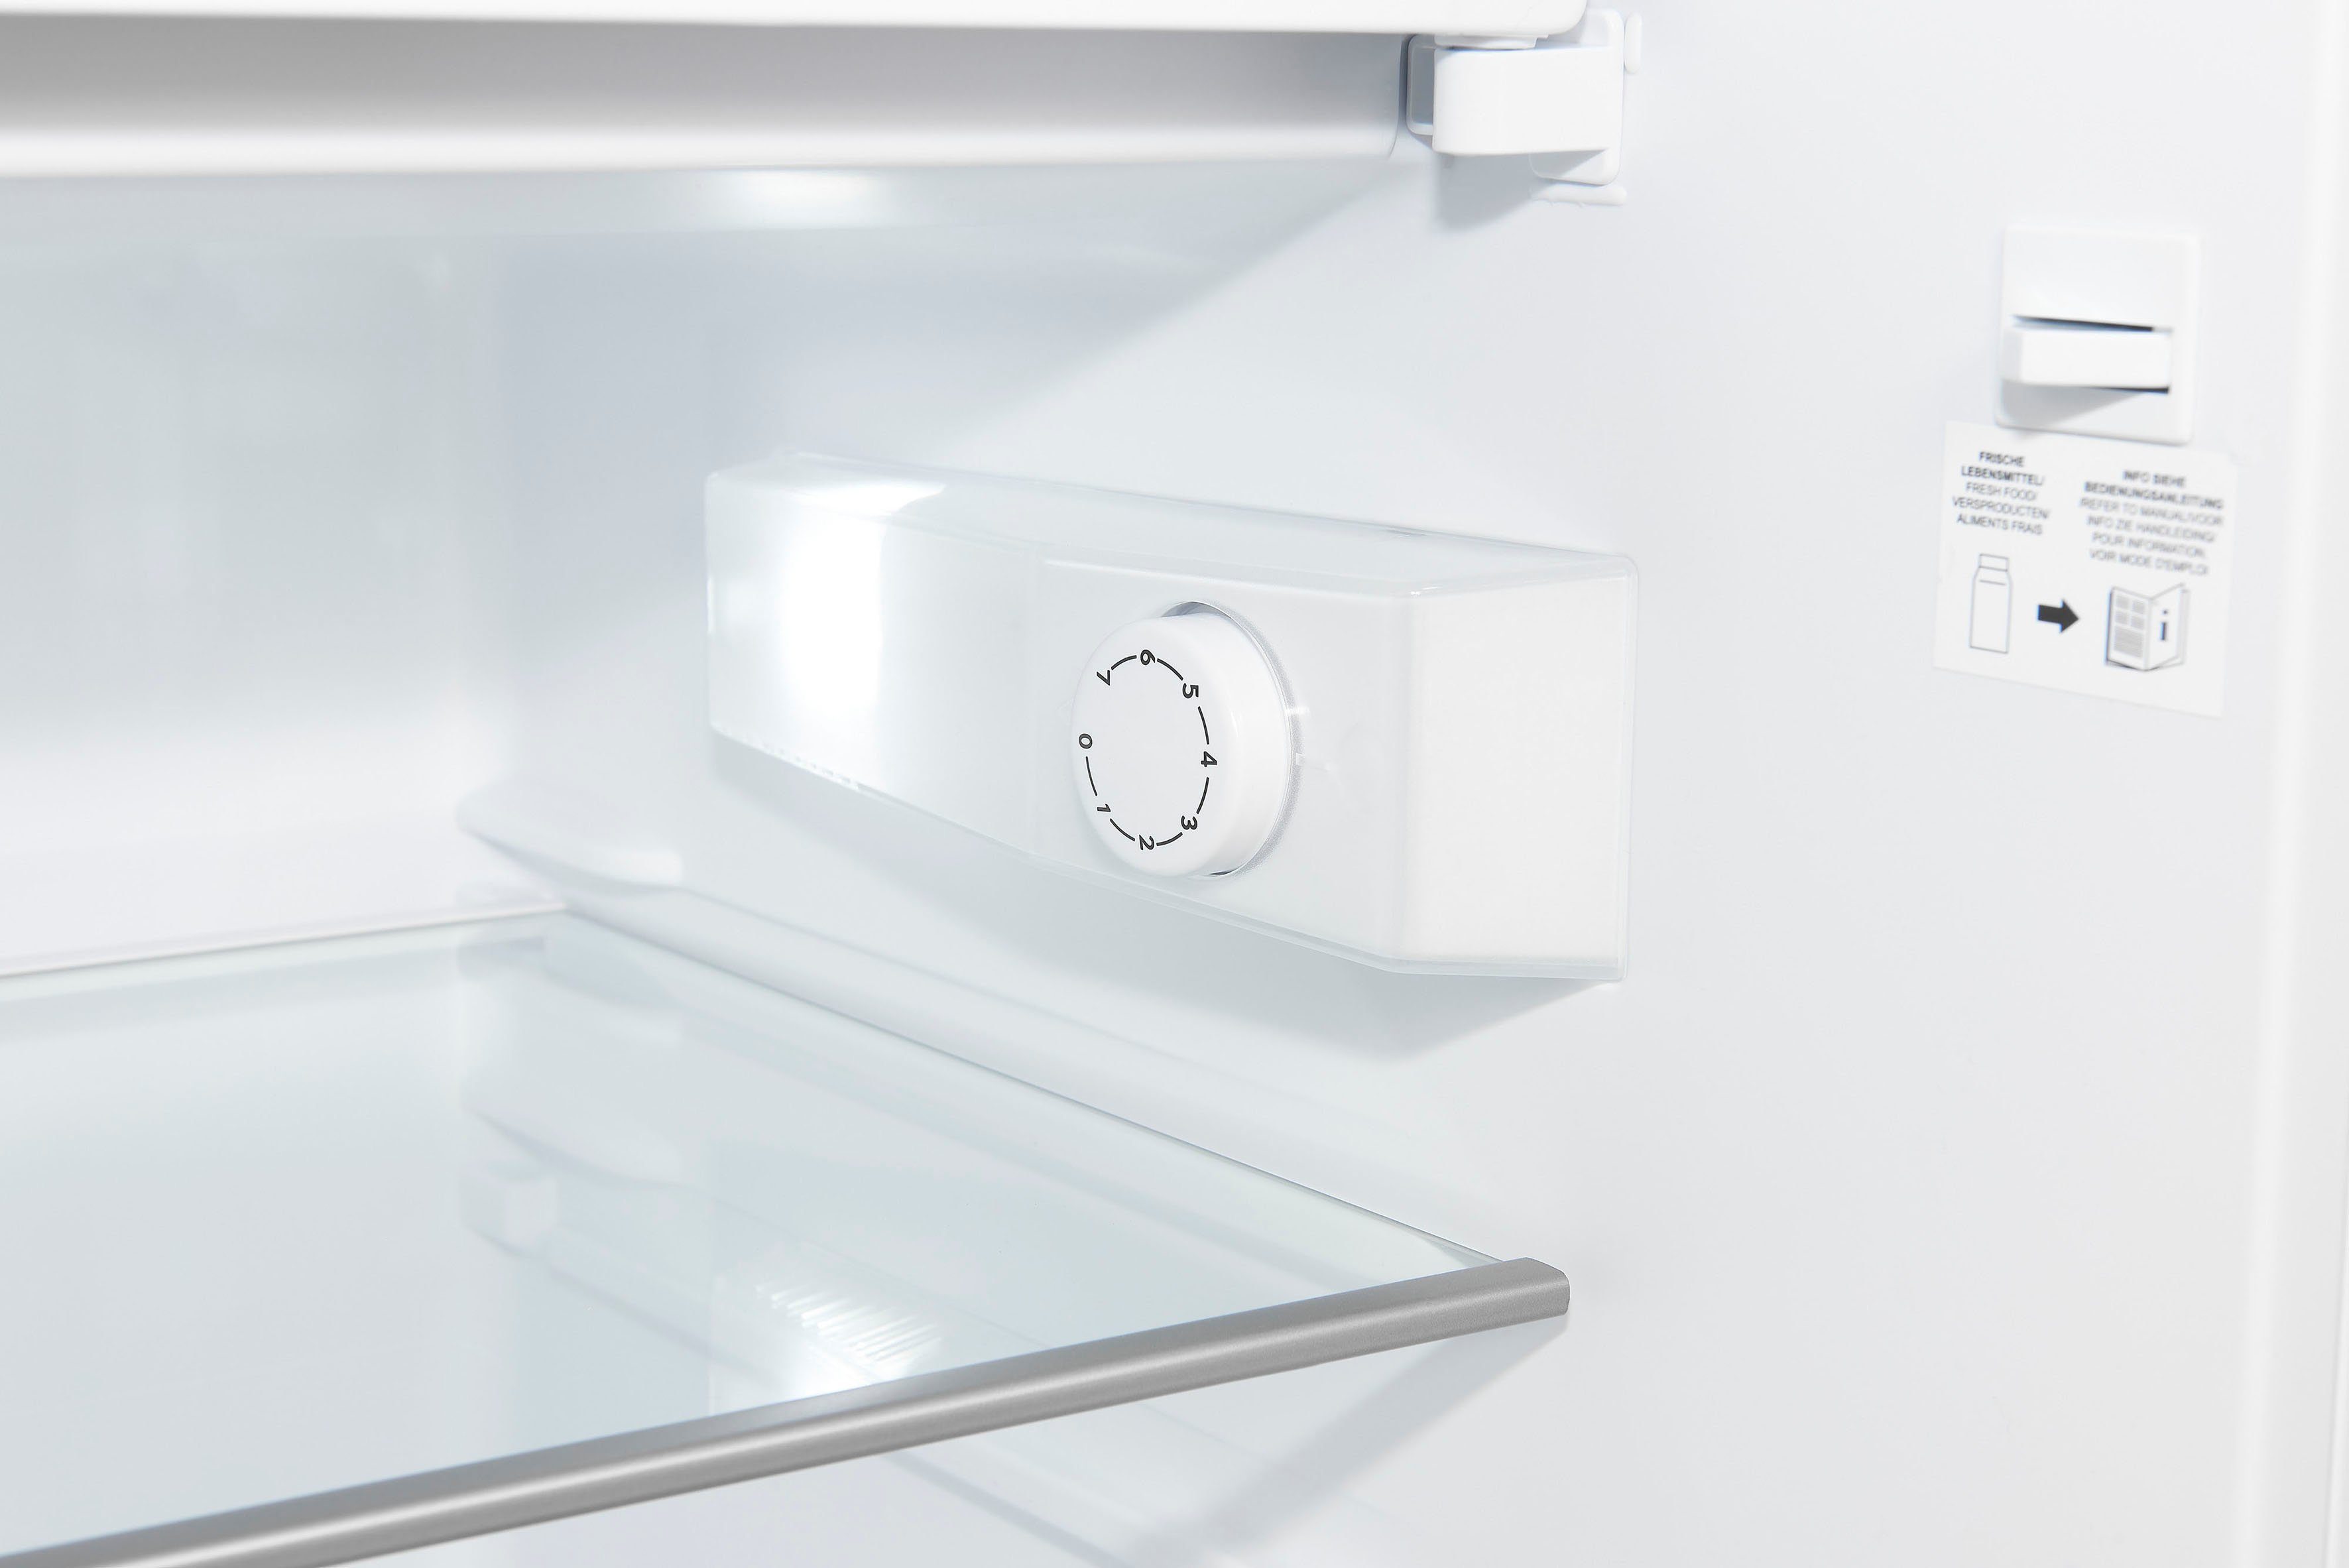 exquisit Kühlschrank KS16-4-H-010D weiss, 85 56 weiß cm cm breit hoch